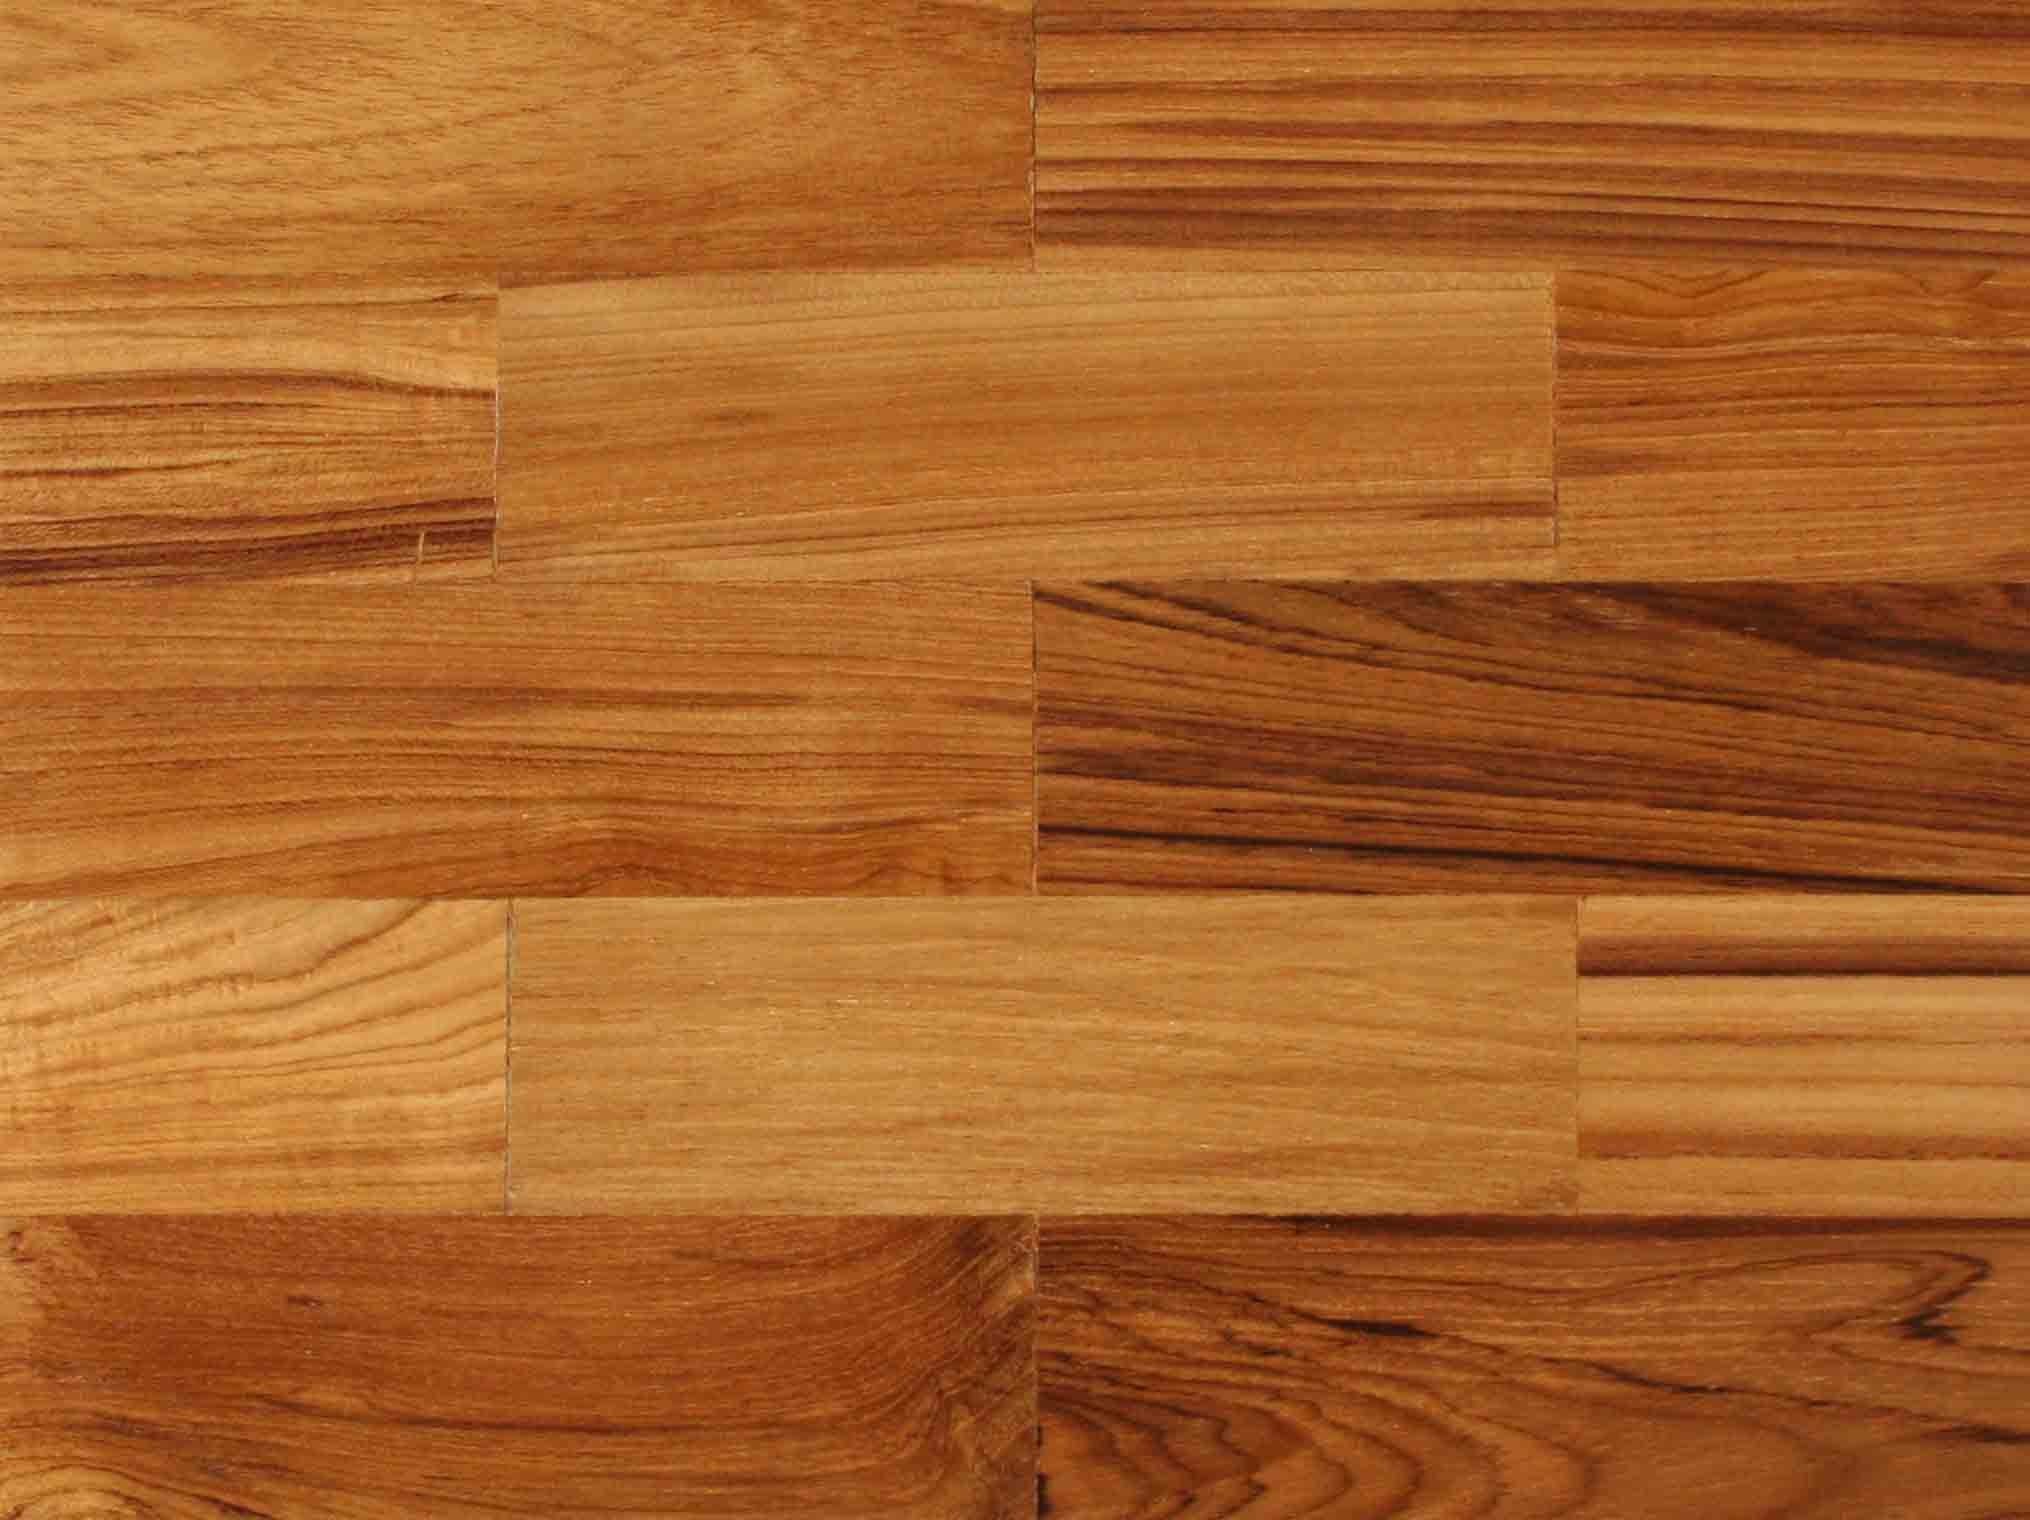 Wood Floor And The Wooden Floors Advantage Wood Floors